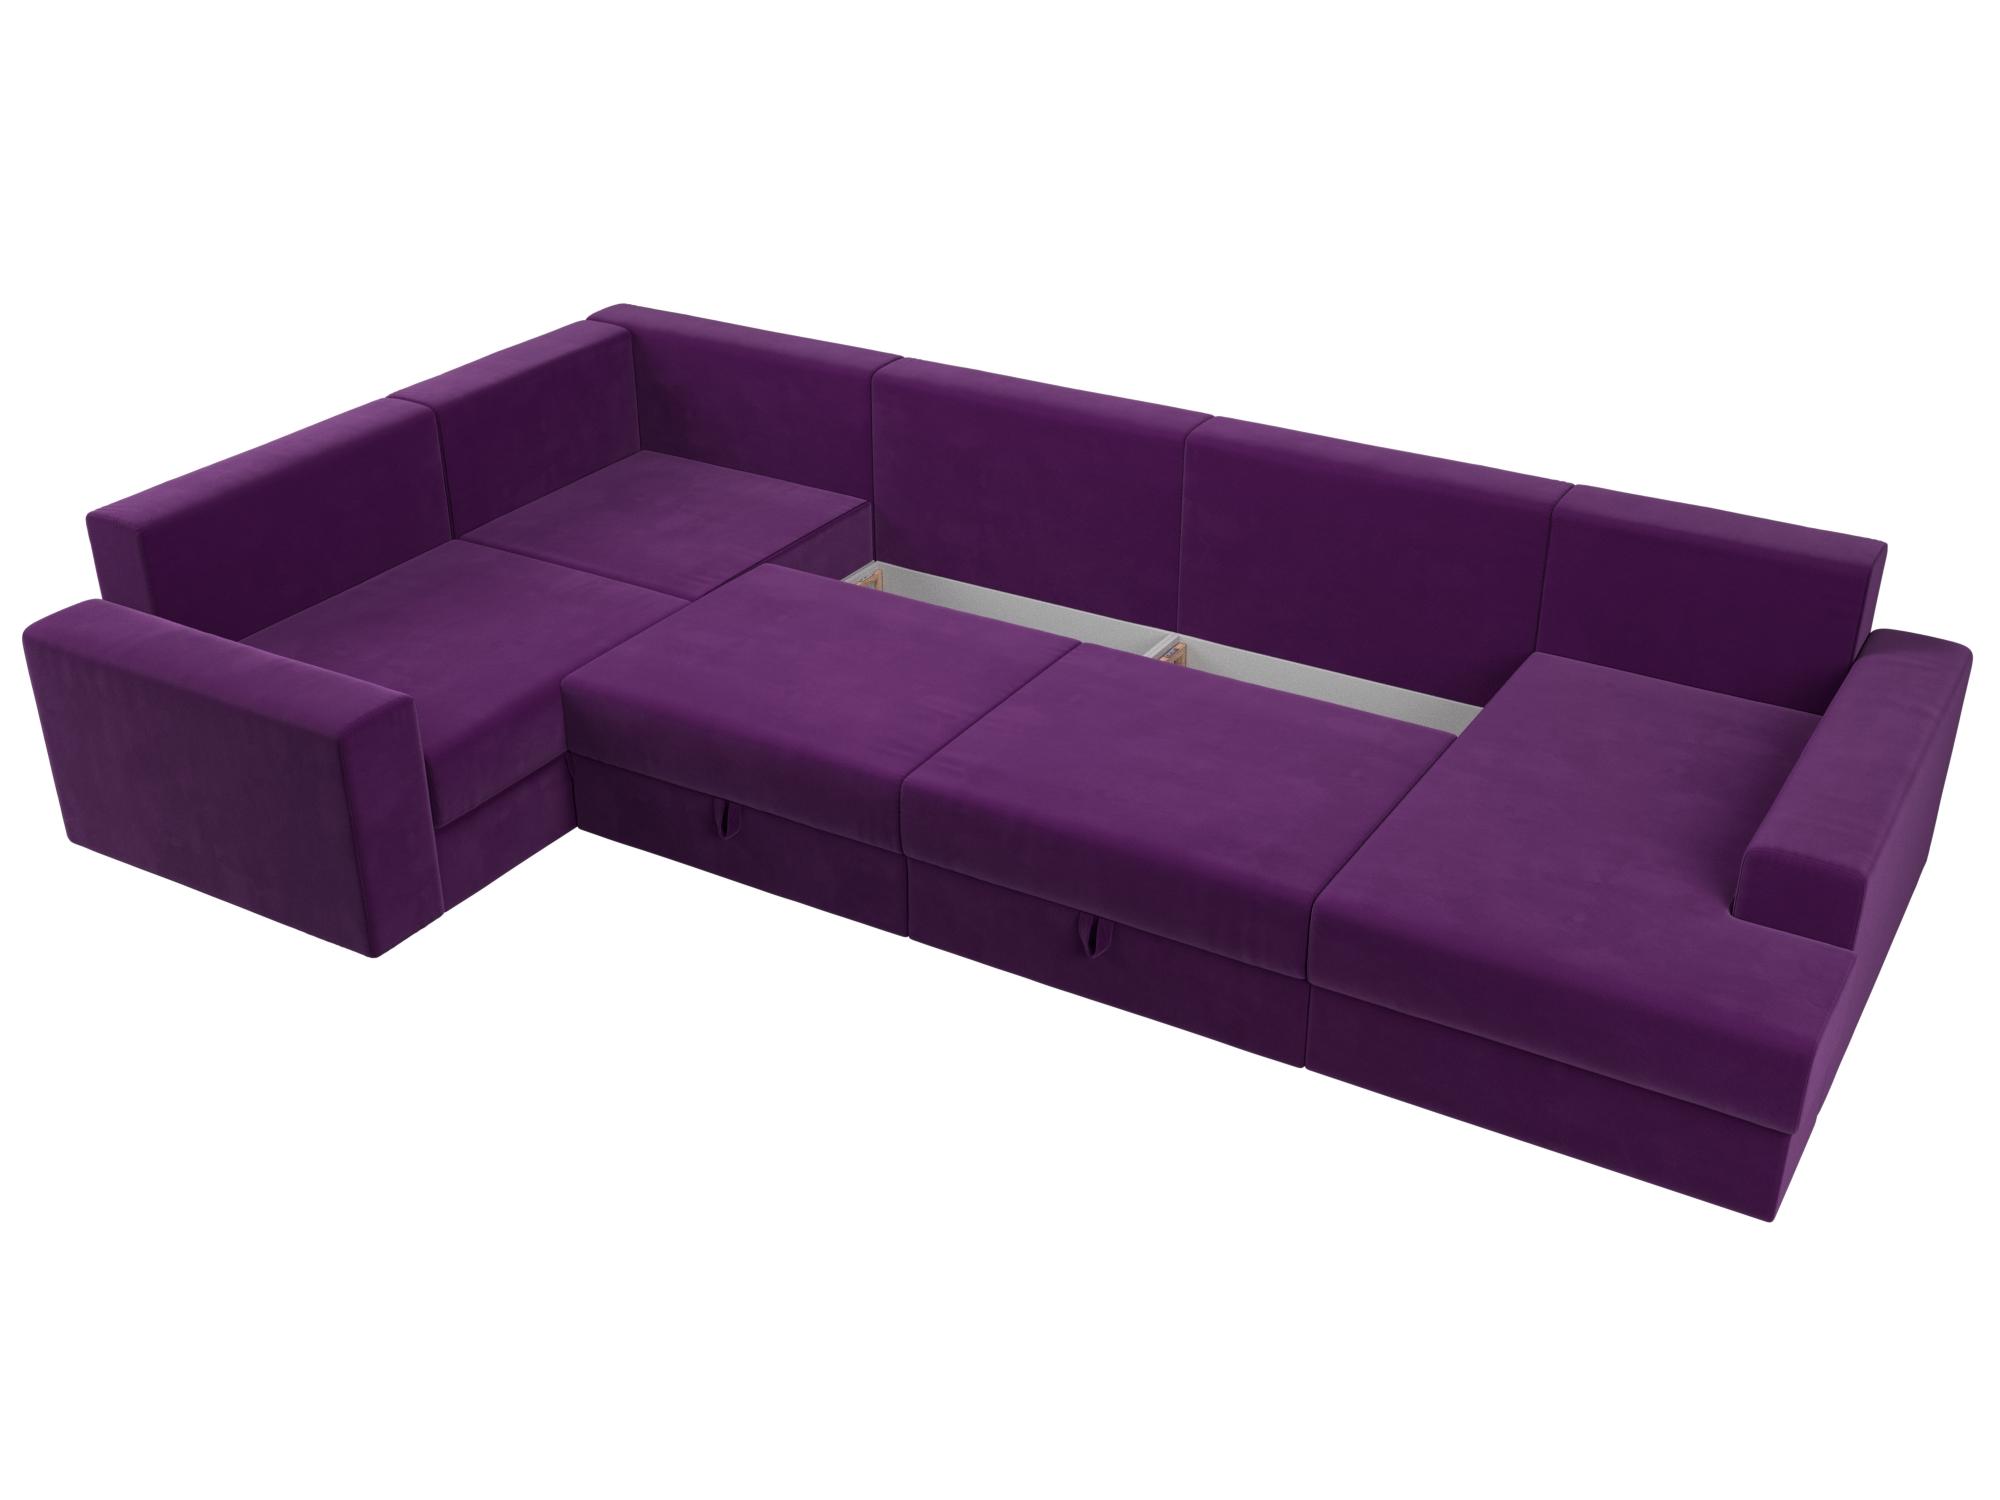 П-образный диван Майами правый угол (Фиолетовый\Черный\Черный)